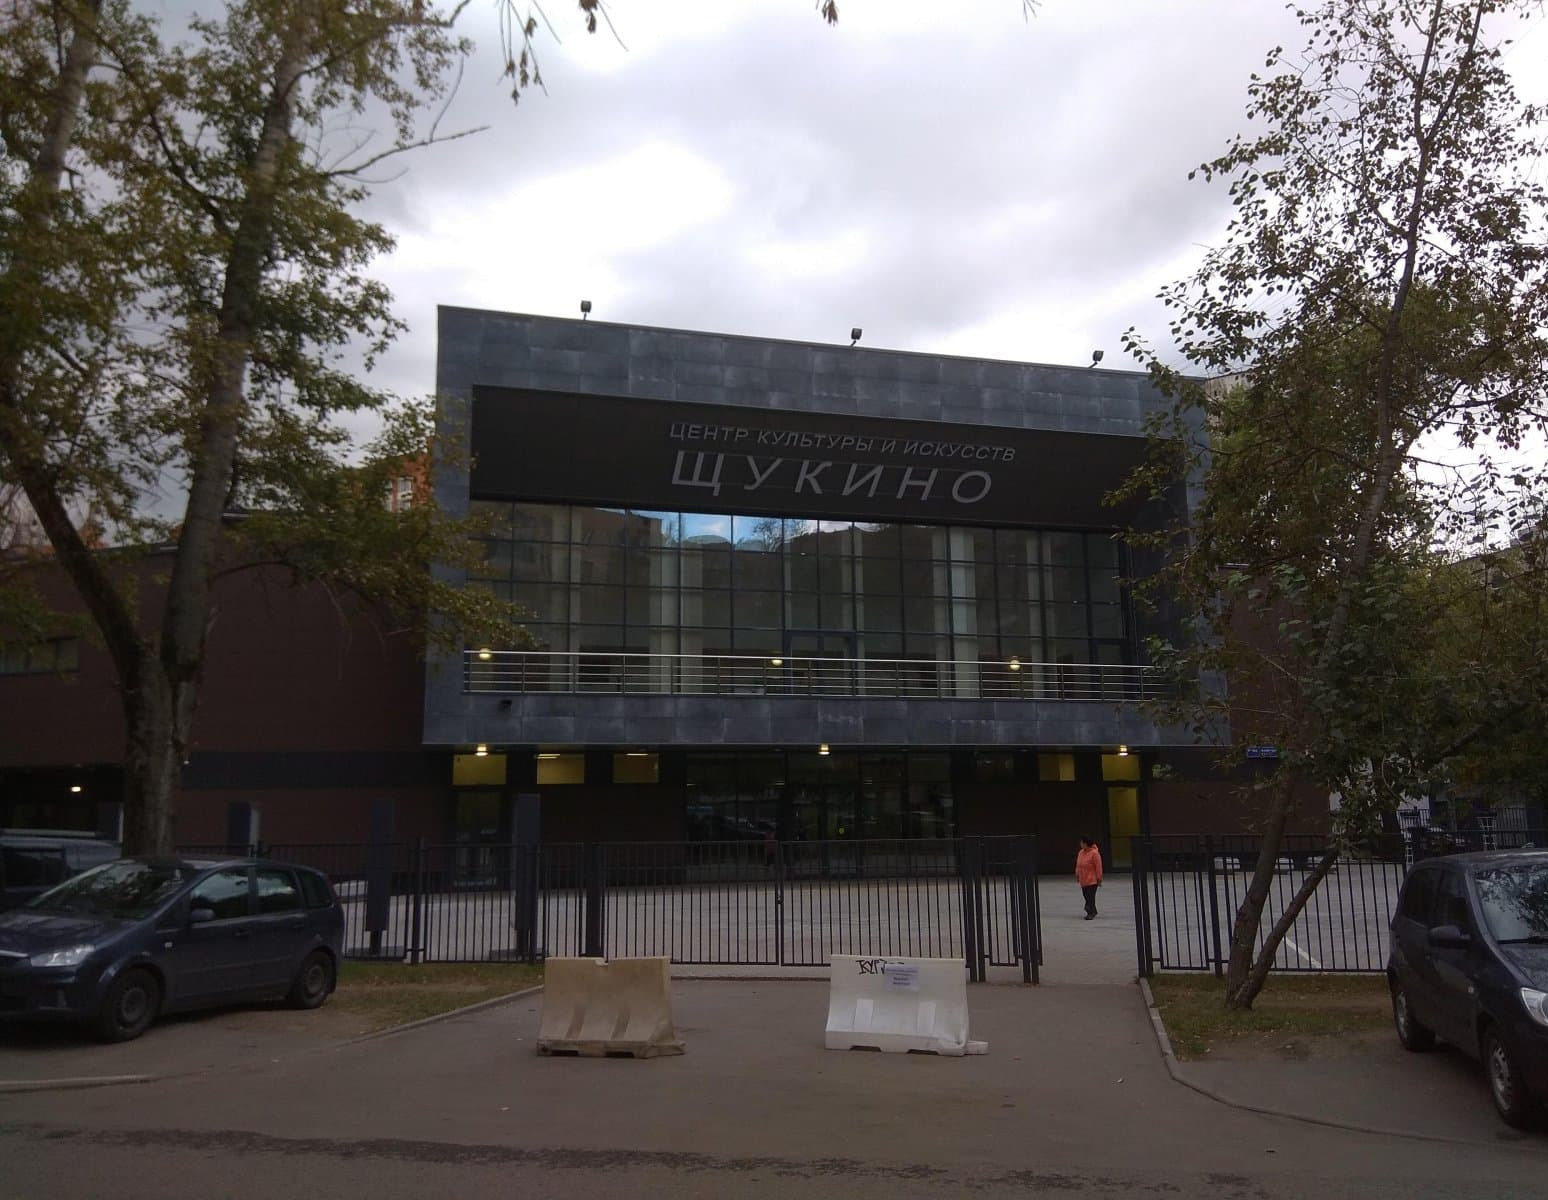 Центр культуры и искусств Щукино